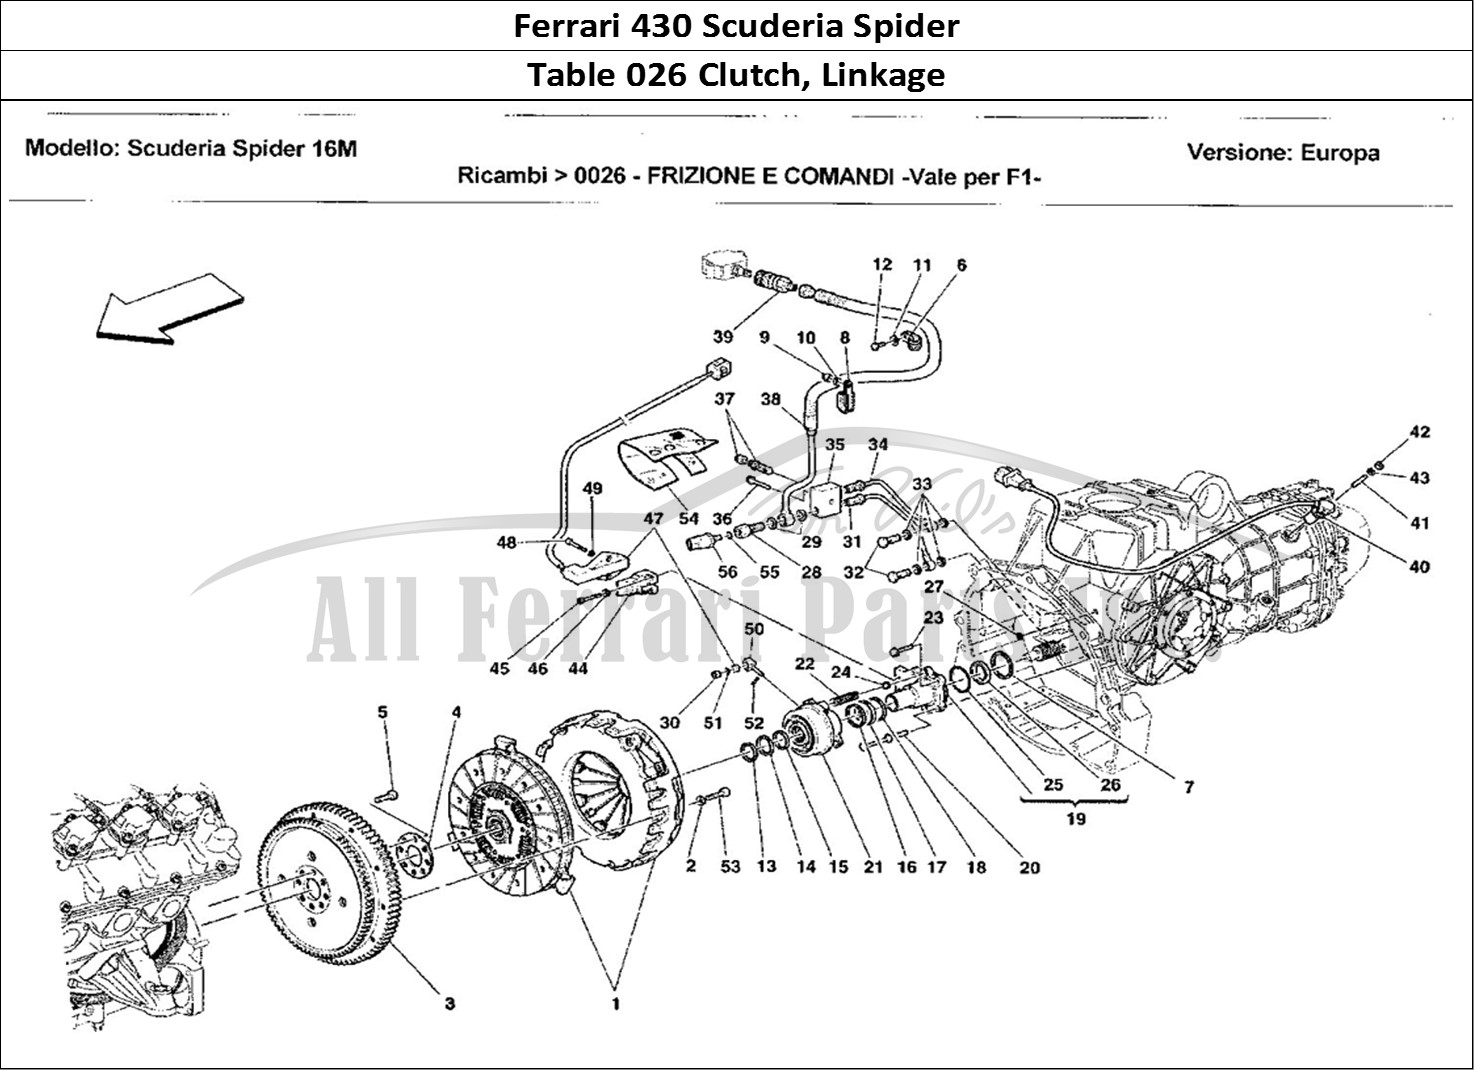 Ferrari Parts Ferrari 430 Scuderia Spider 16M Page 026 Frizione e Comandi